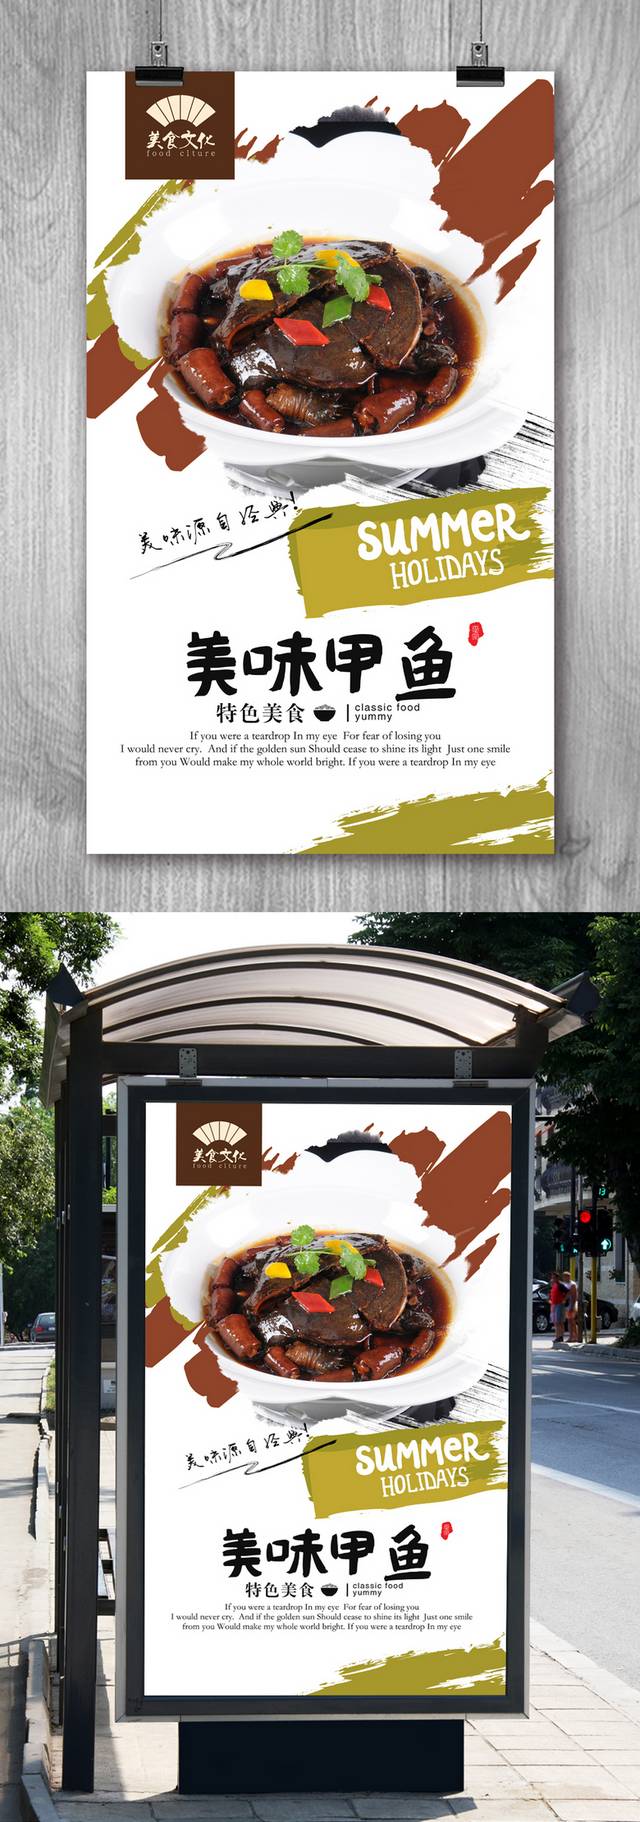 清新甲鱼宣传海报设计